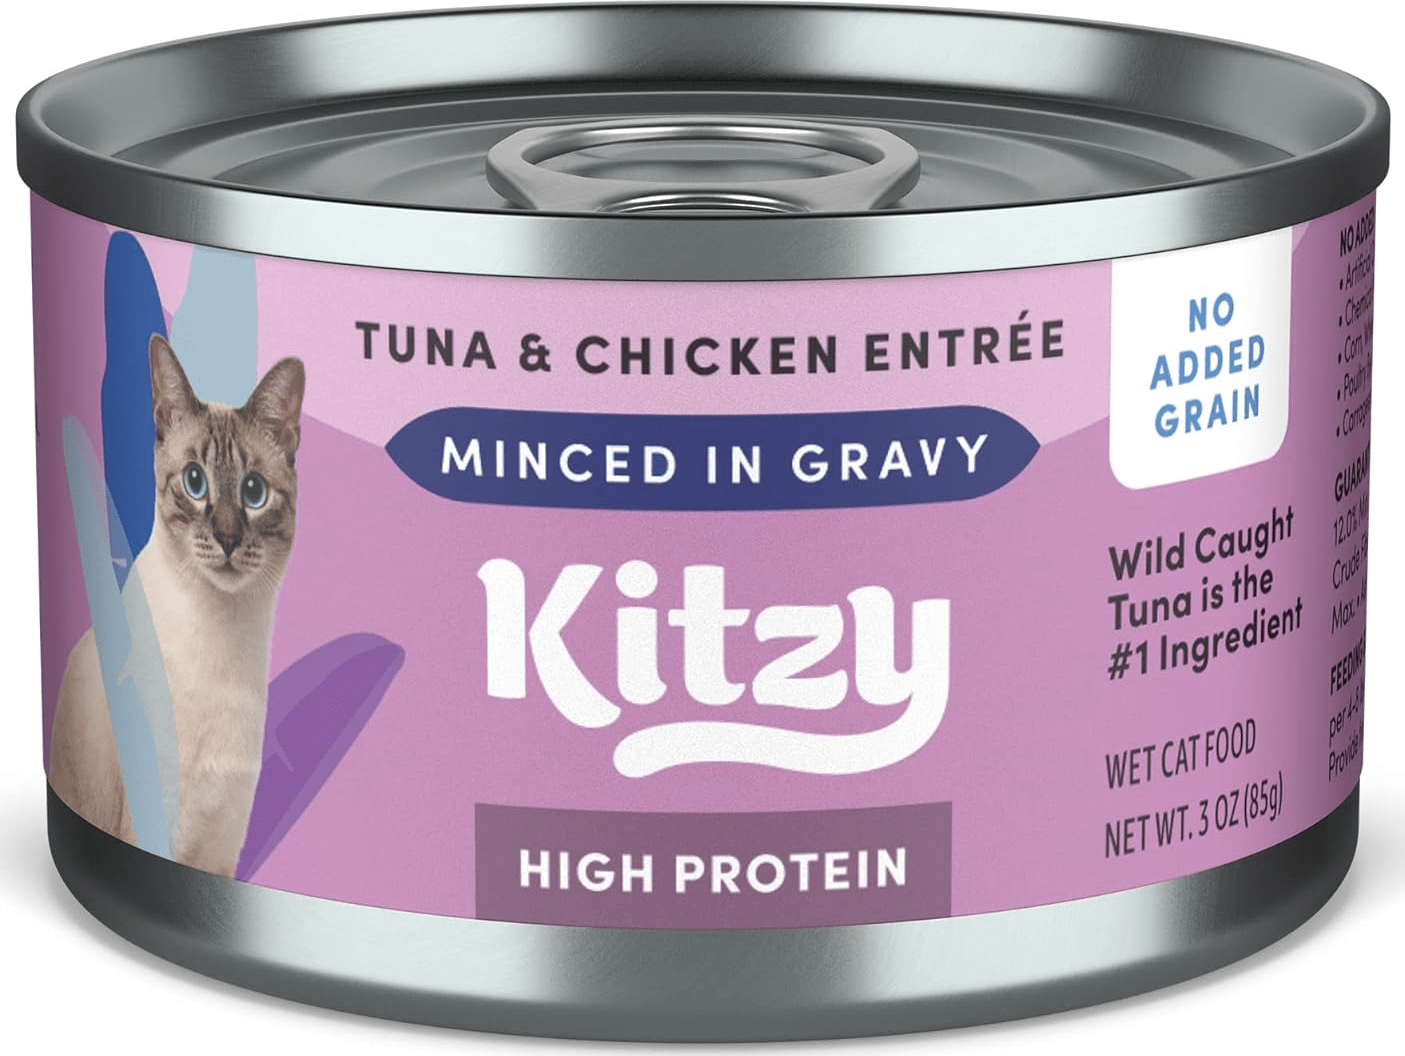 Kitzy High Protein Wild Caught Tuna & Chicken In Gravy